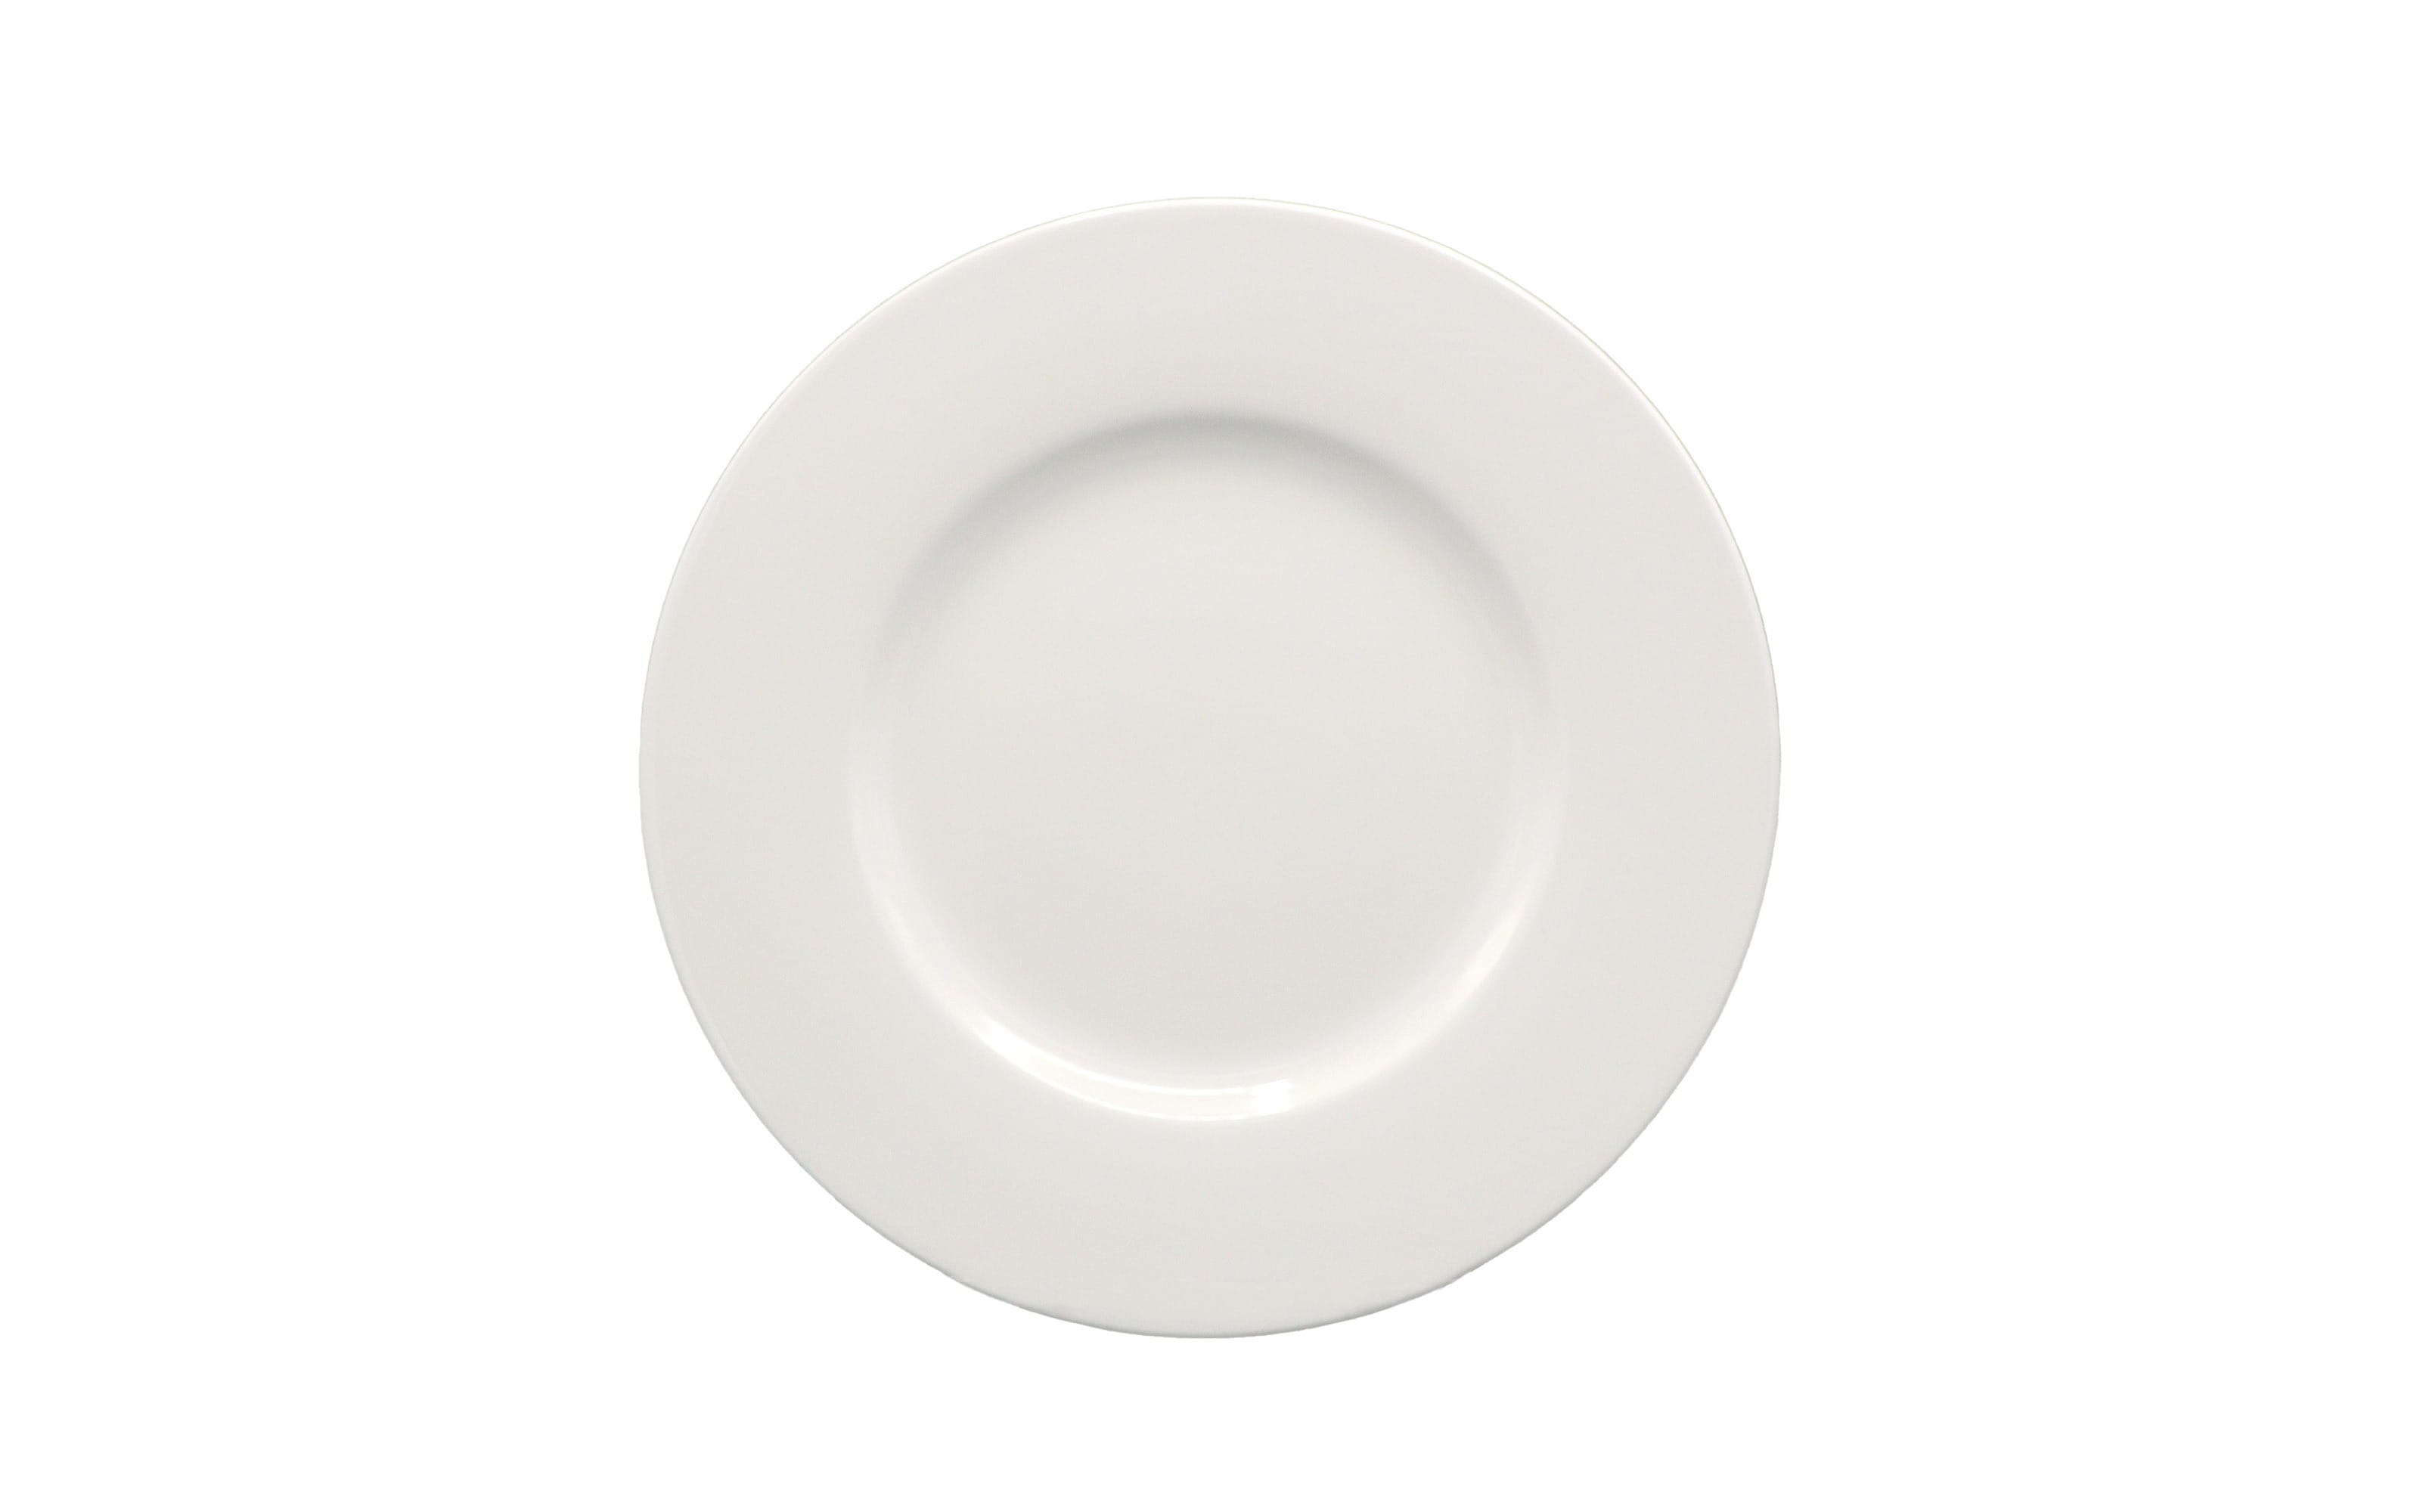 Frühstücksteller Noblesse aus Porzellan in weiß, 22 cm